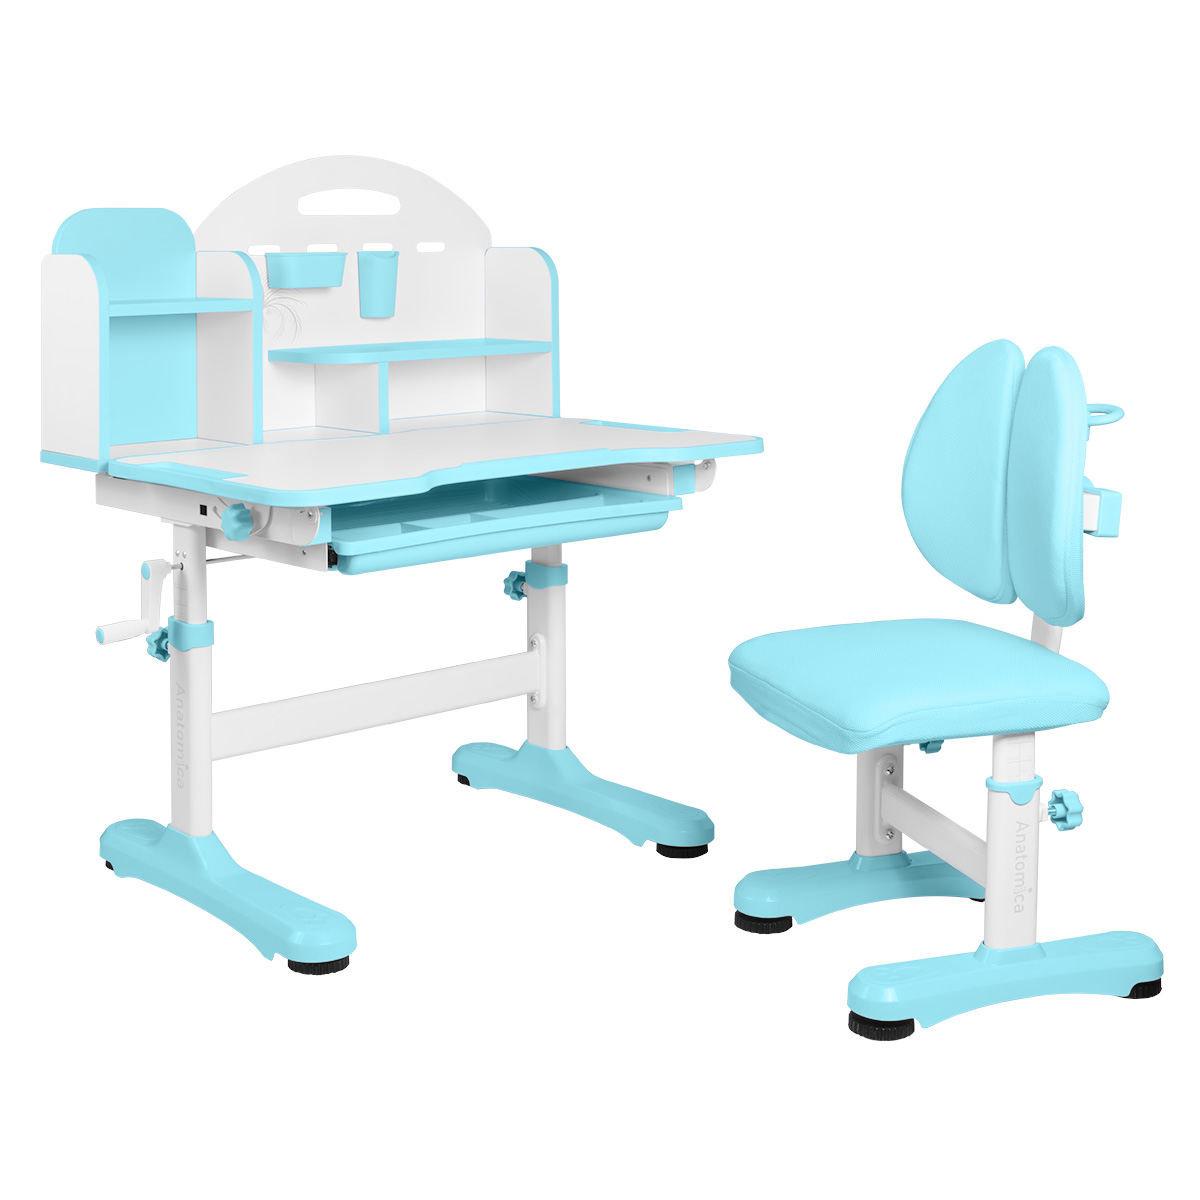 Комплект Anatomica Fiona парта, стул, надстройка, выдвижной ящик, голубой anatomica комплект amadeo парта стул надстройка выдвижной ящик